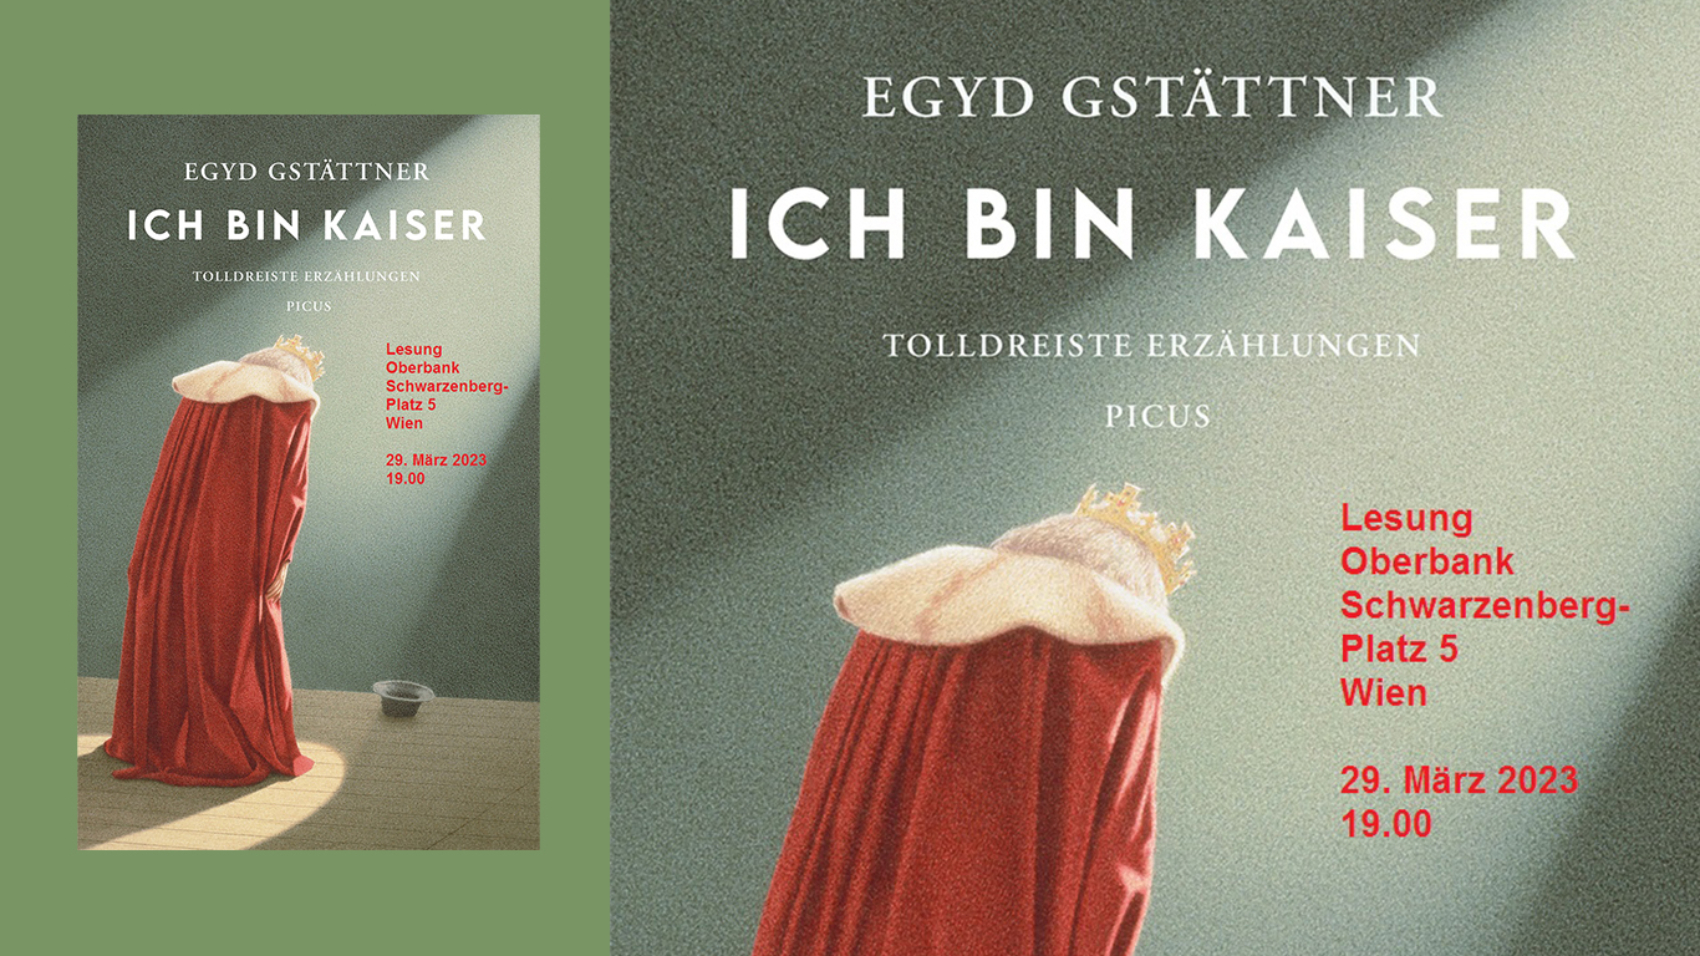 Egyd Gstättner liest aus seinem neuen Buch "Ich bin Kaiser" in der Oberbank in Wien am 29. März 2023